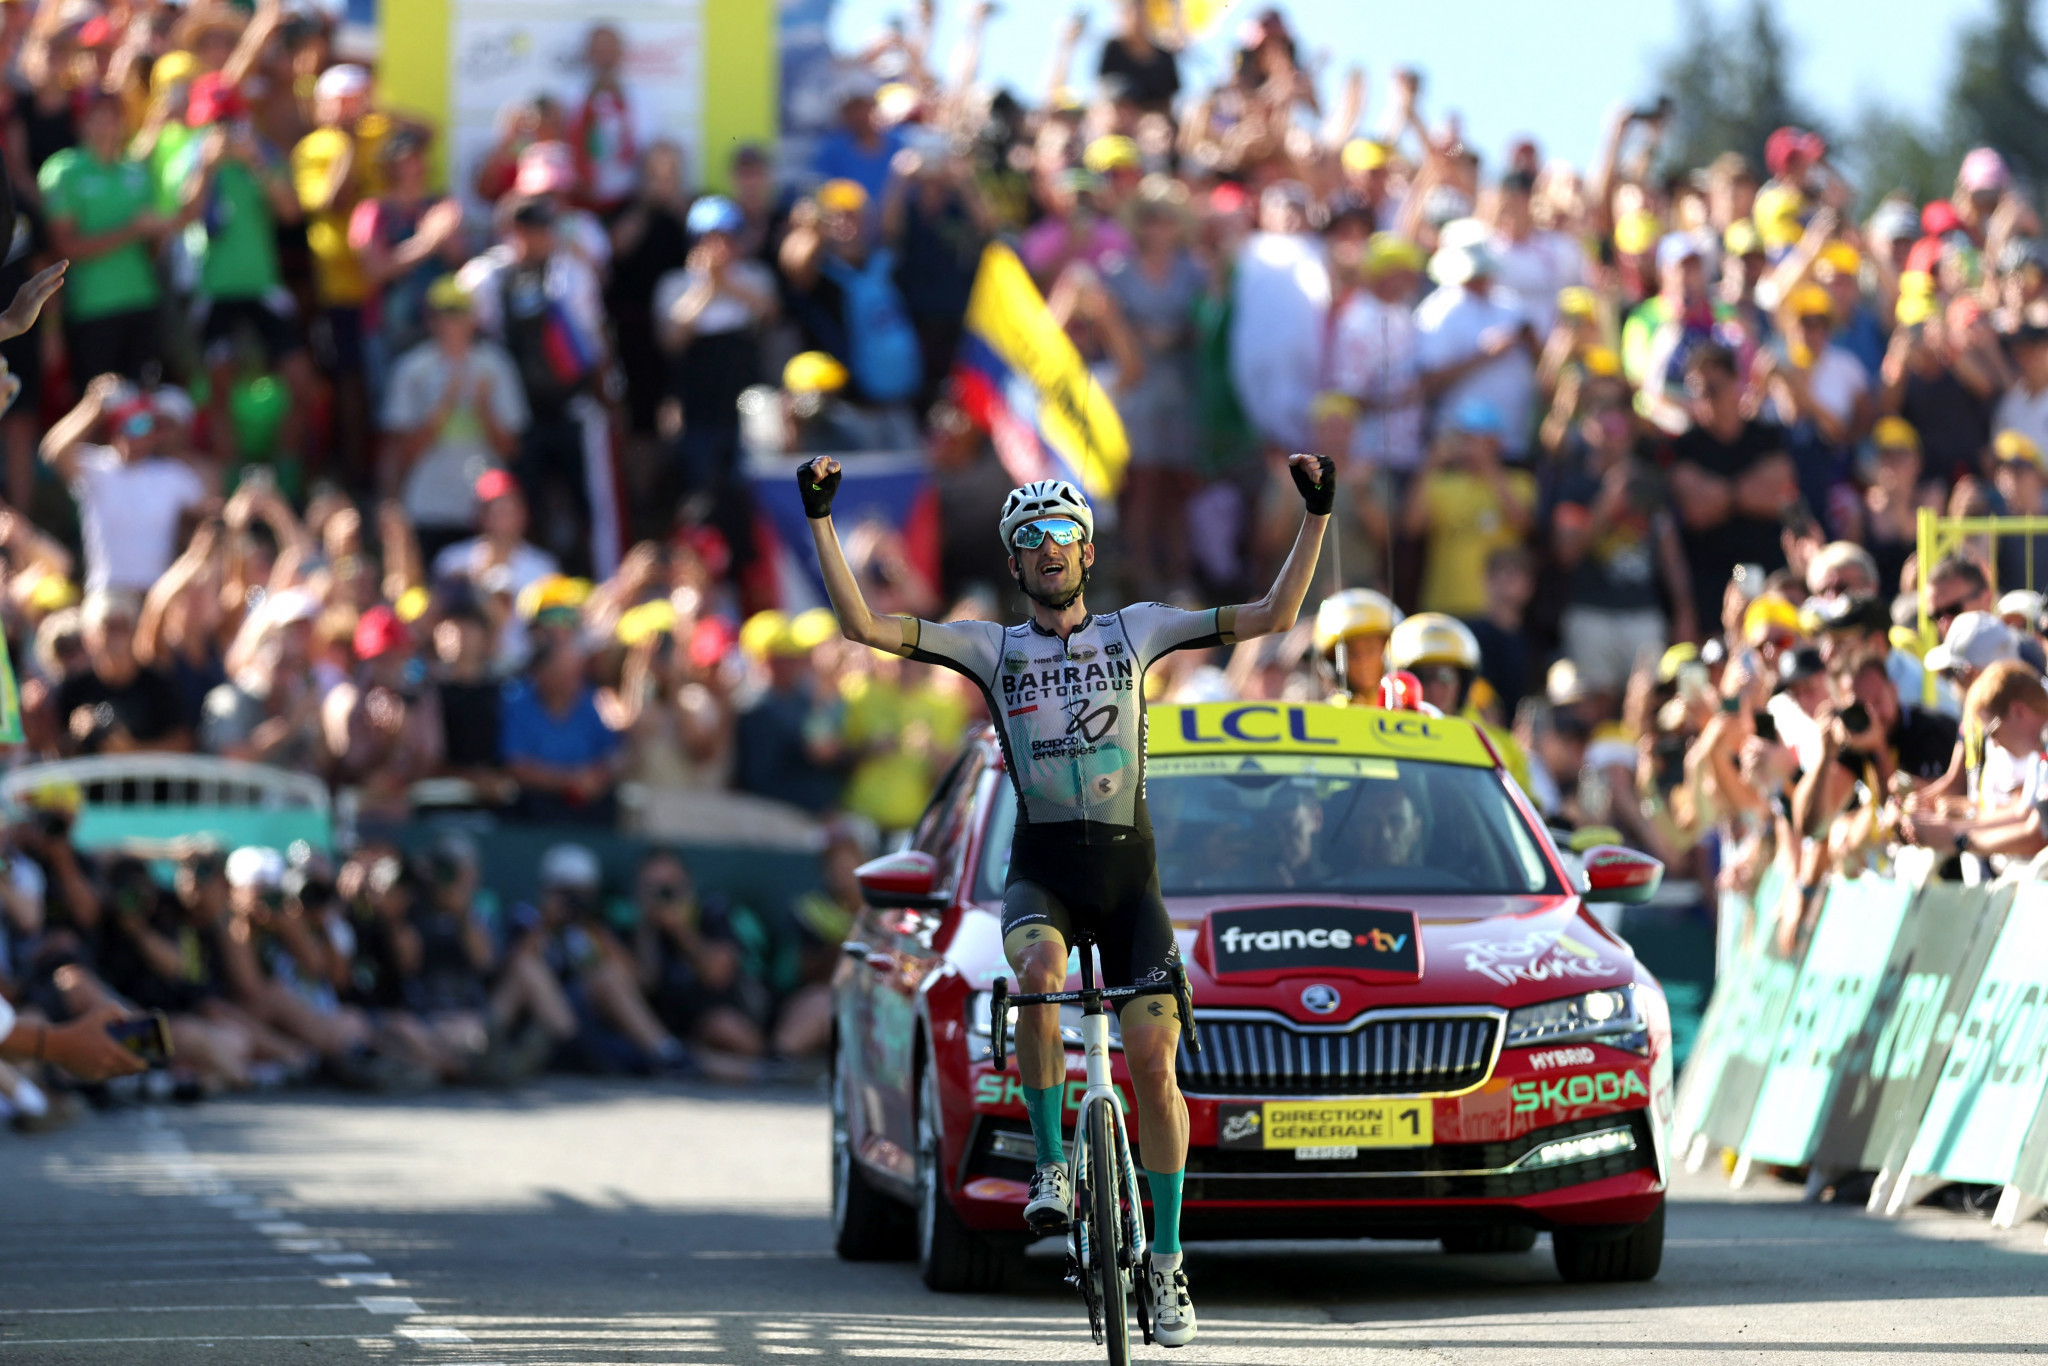 Selfietaking fan causes big crash at Tour de France as Poels wins stage 15